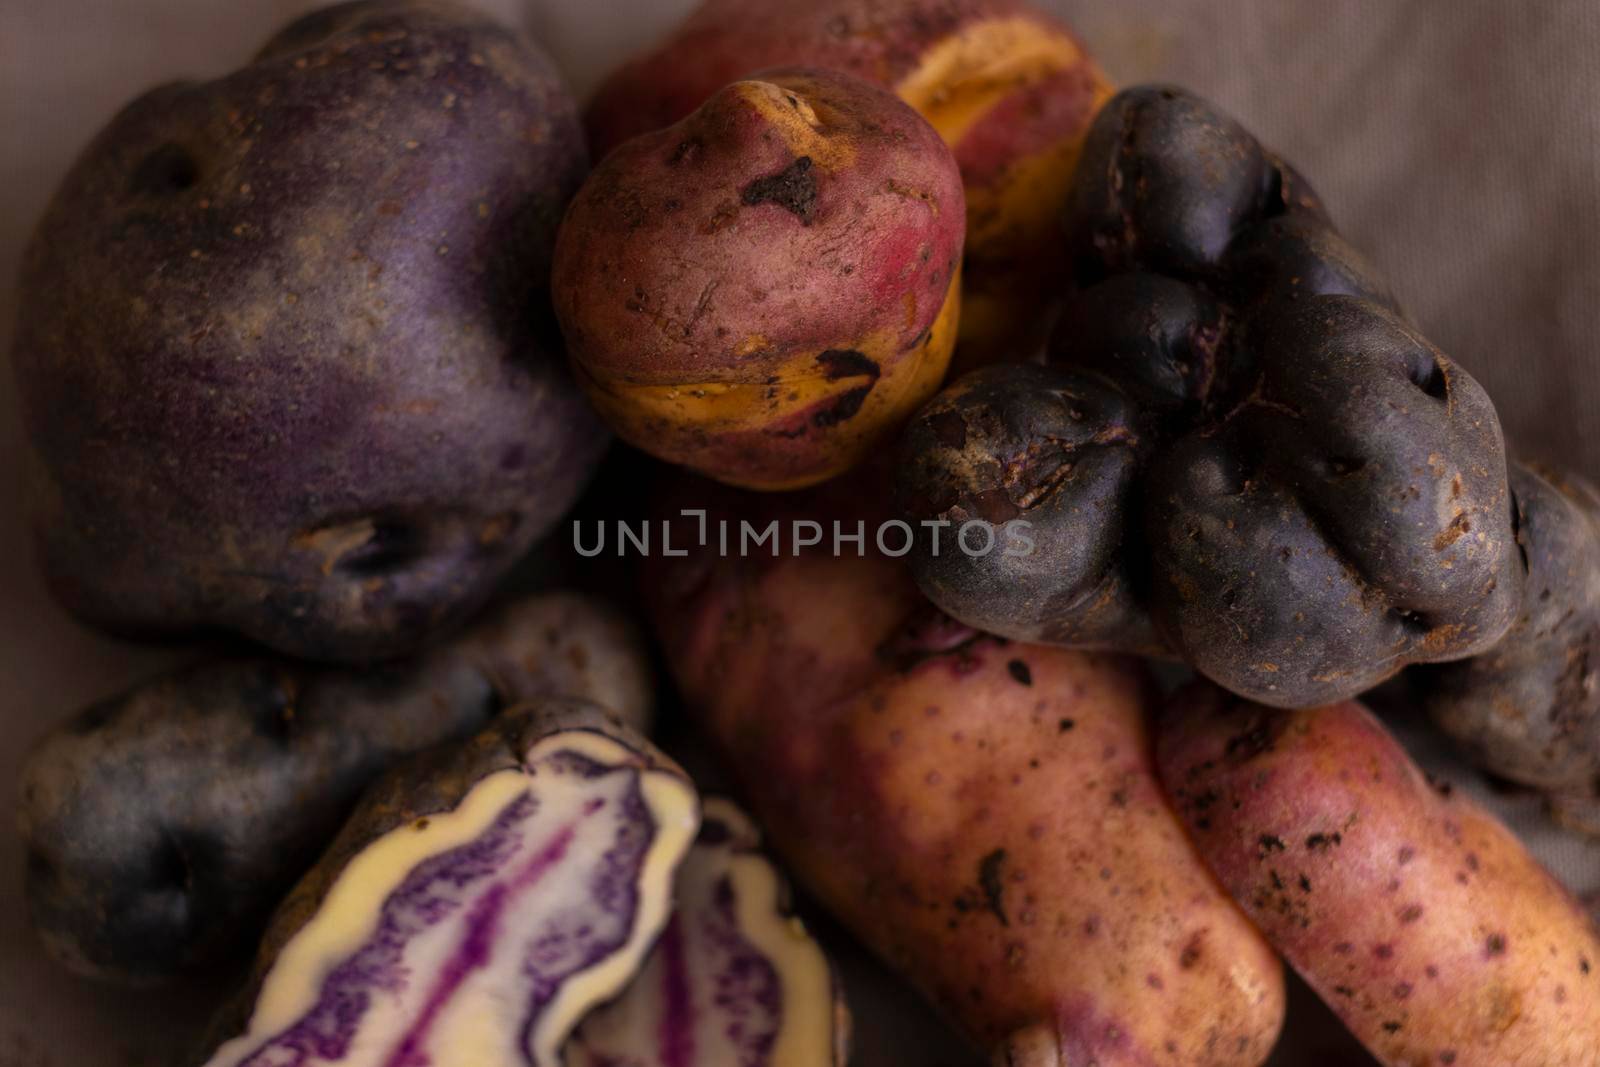 Peruvian native potatoes, harvested in Cusco, Peru